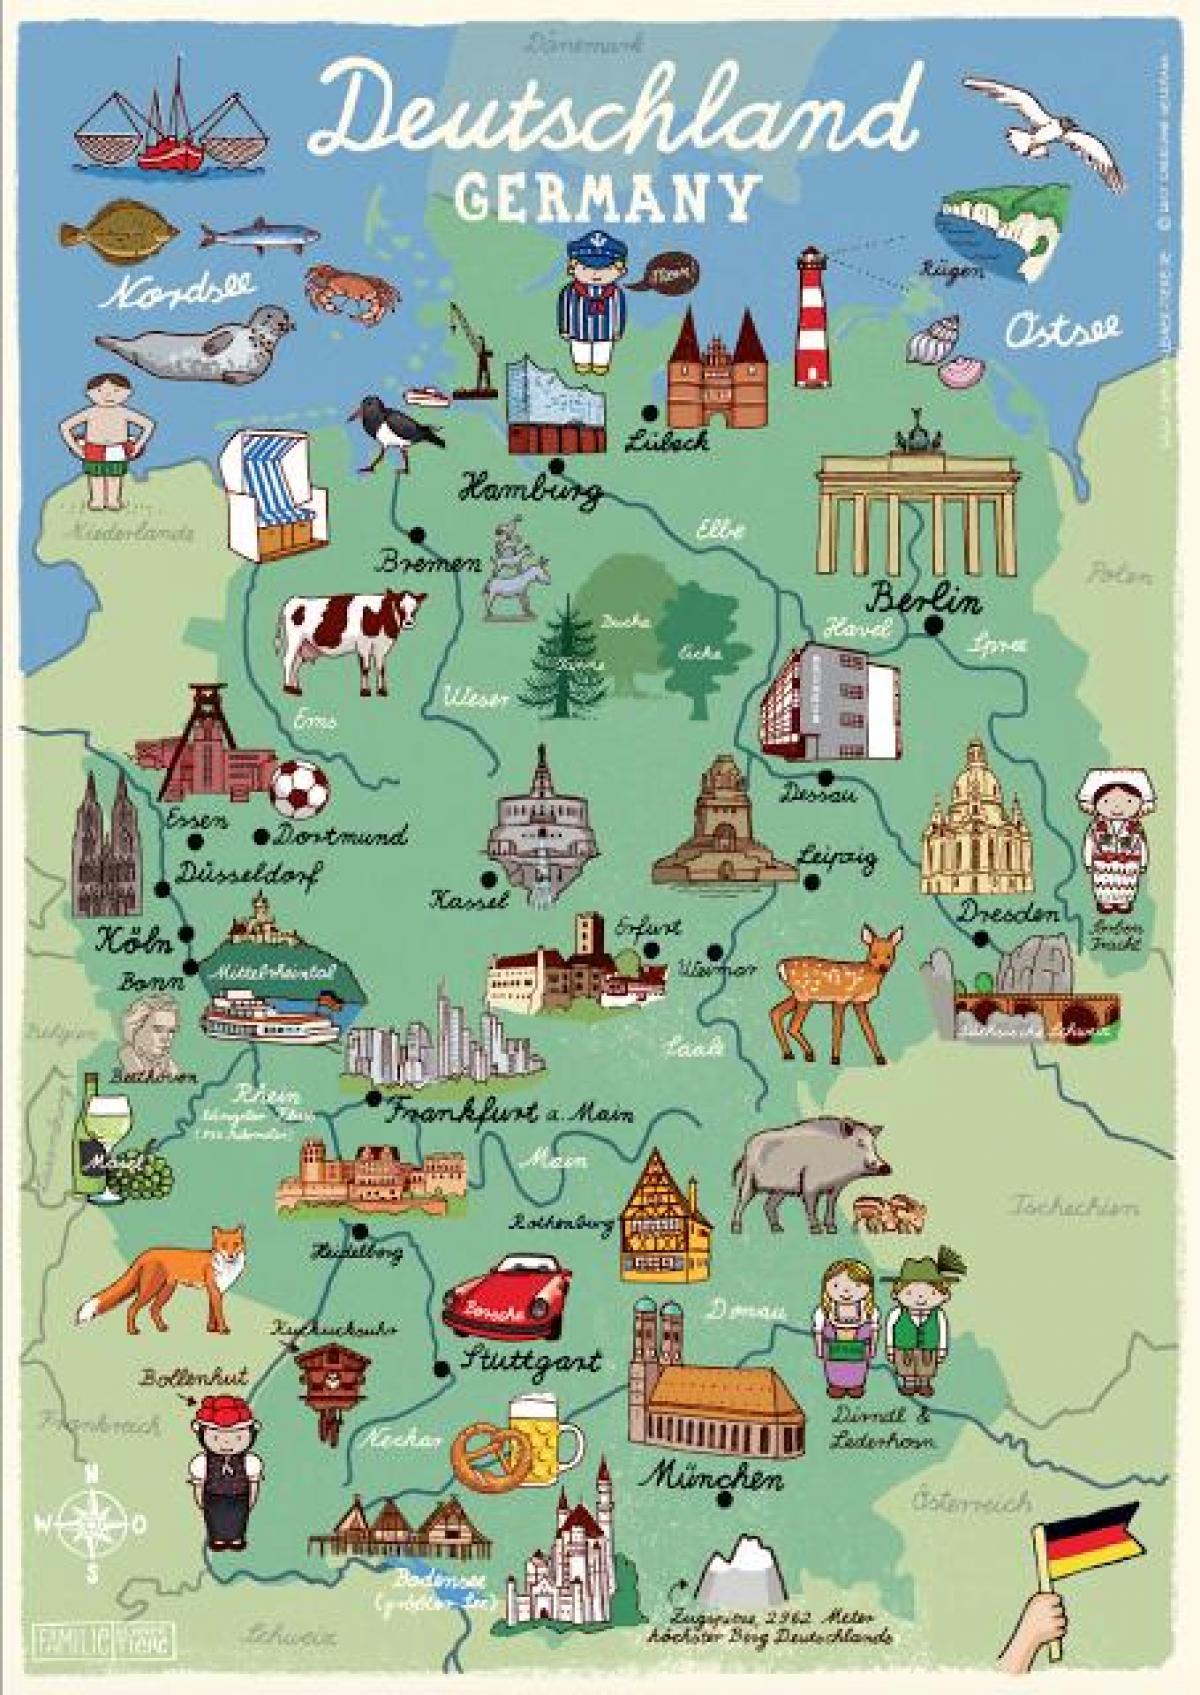 germany tourism tagline